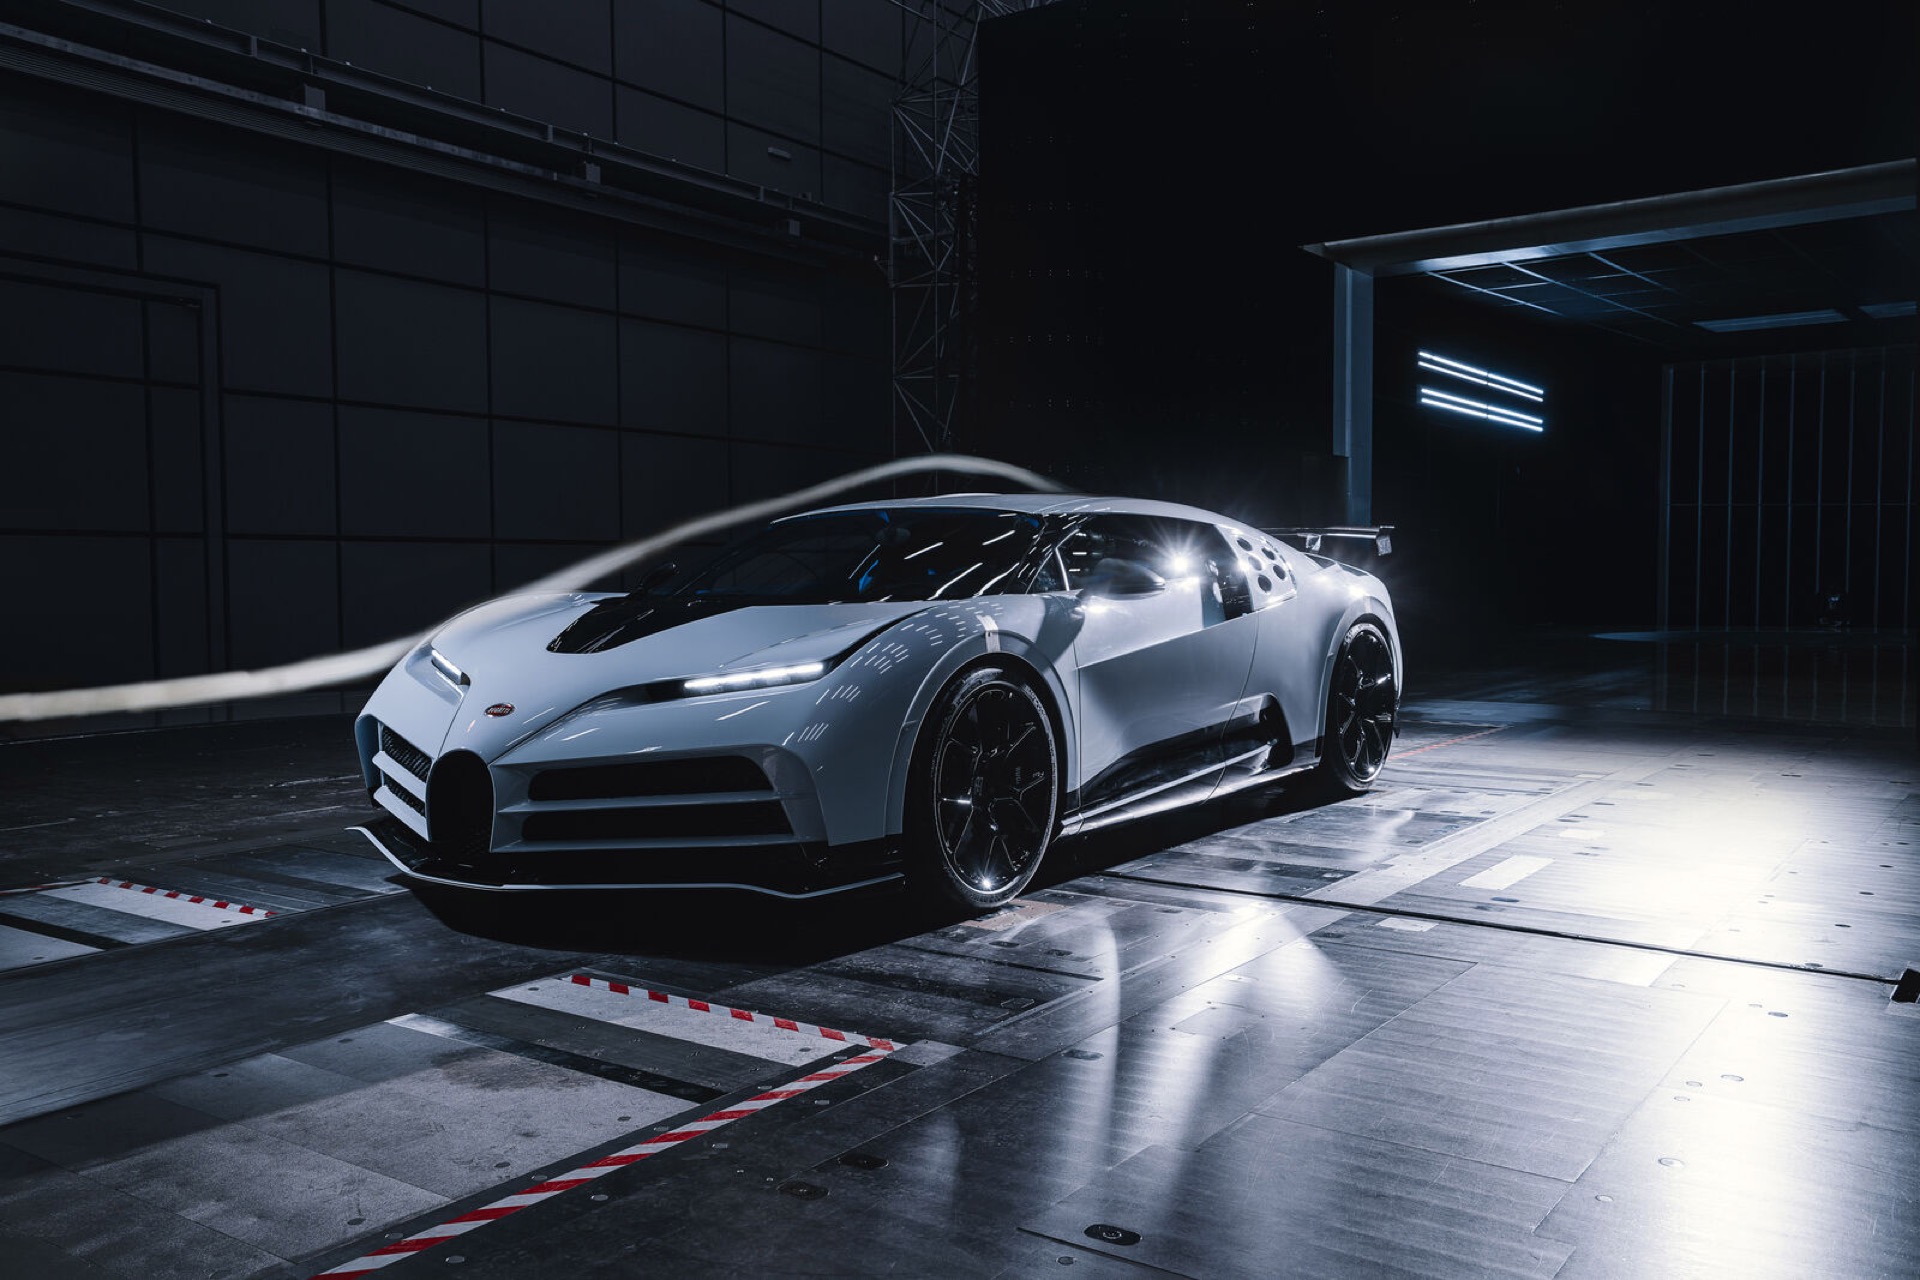 Siêu xe triệu đô Bugatti Centodieci hoàn thành thử nghiệm đường hầm gió 2022-bugatti-centodieci-wind-tunnel-09.jpg